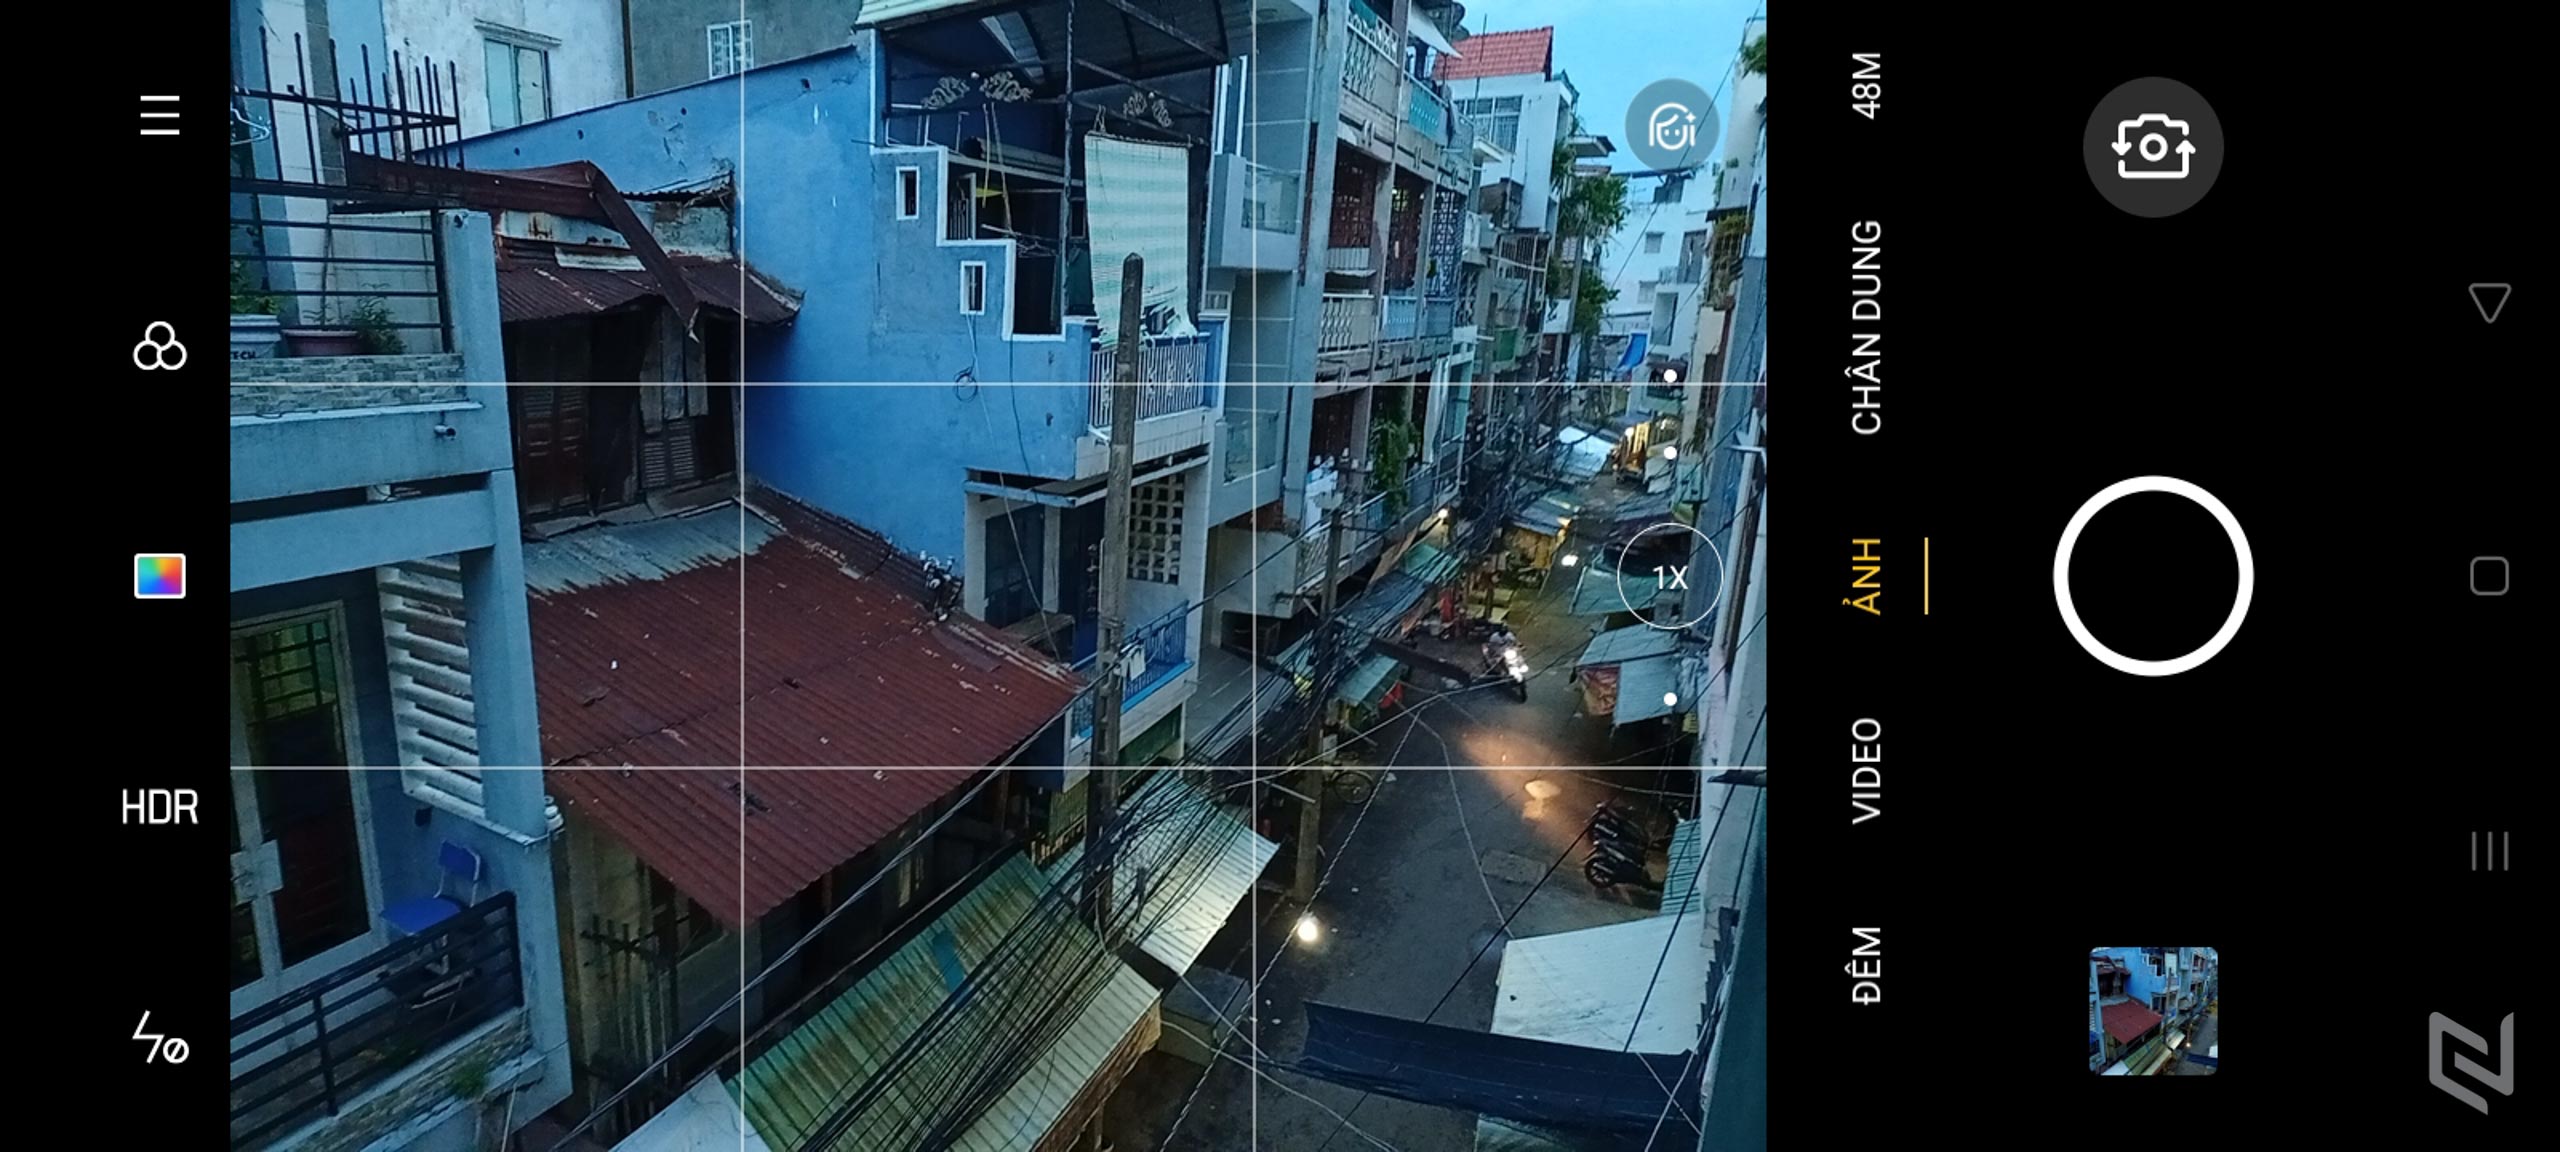 Trải nghiệm camera Realme 6i: Đủ mọi thứ mà bạn cần trên máy ảnh của smartphone